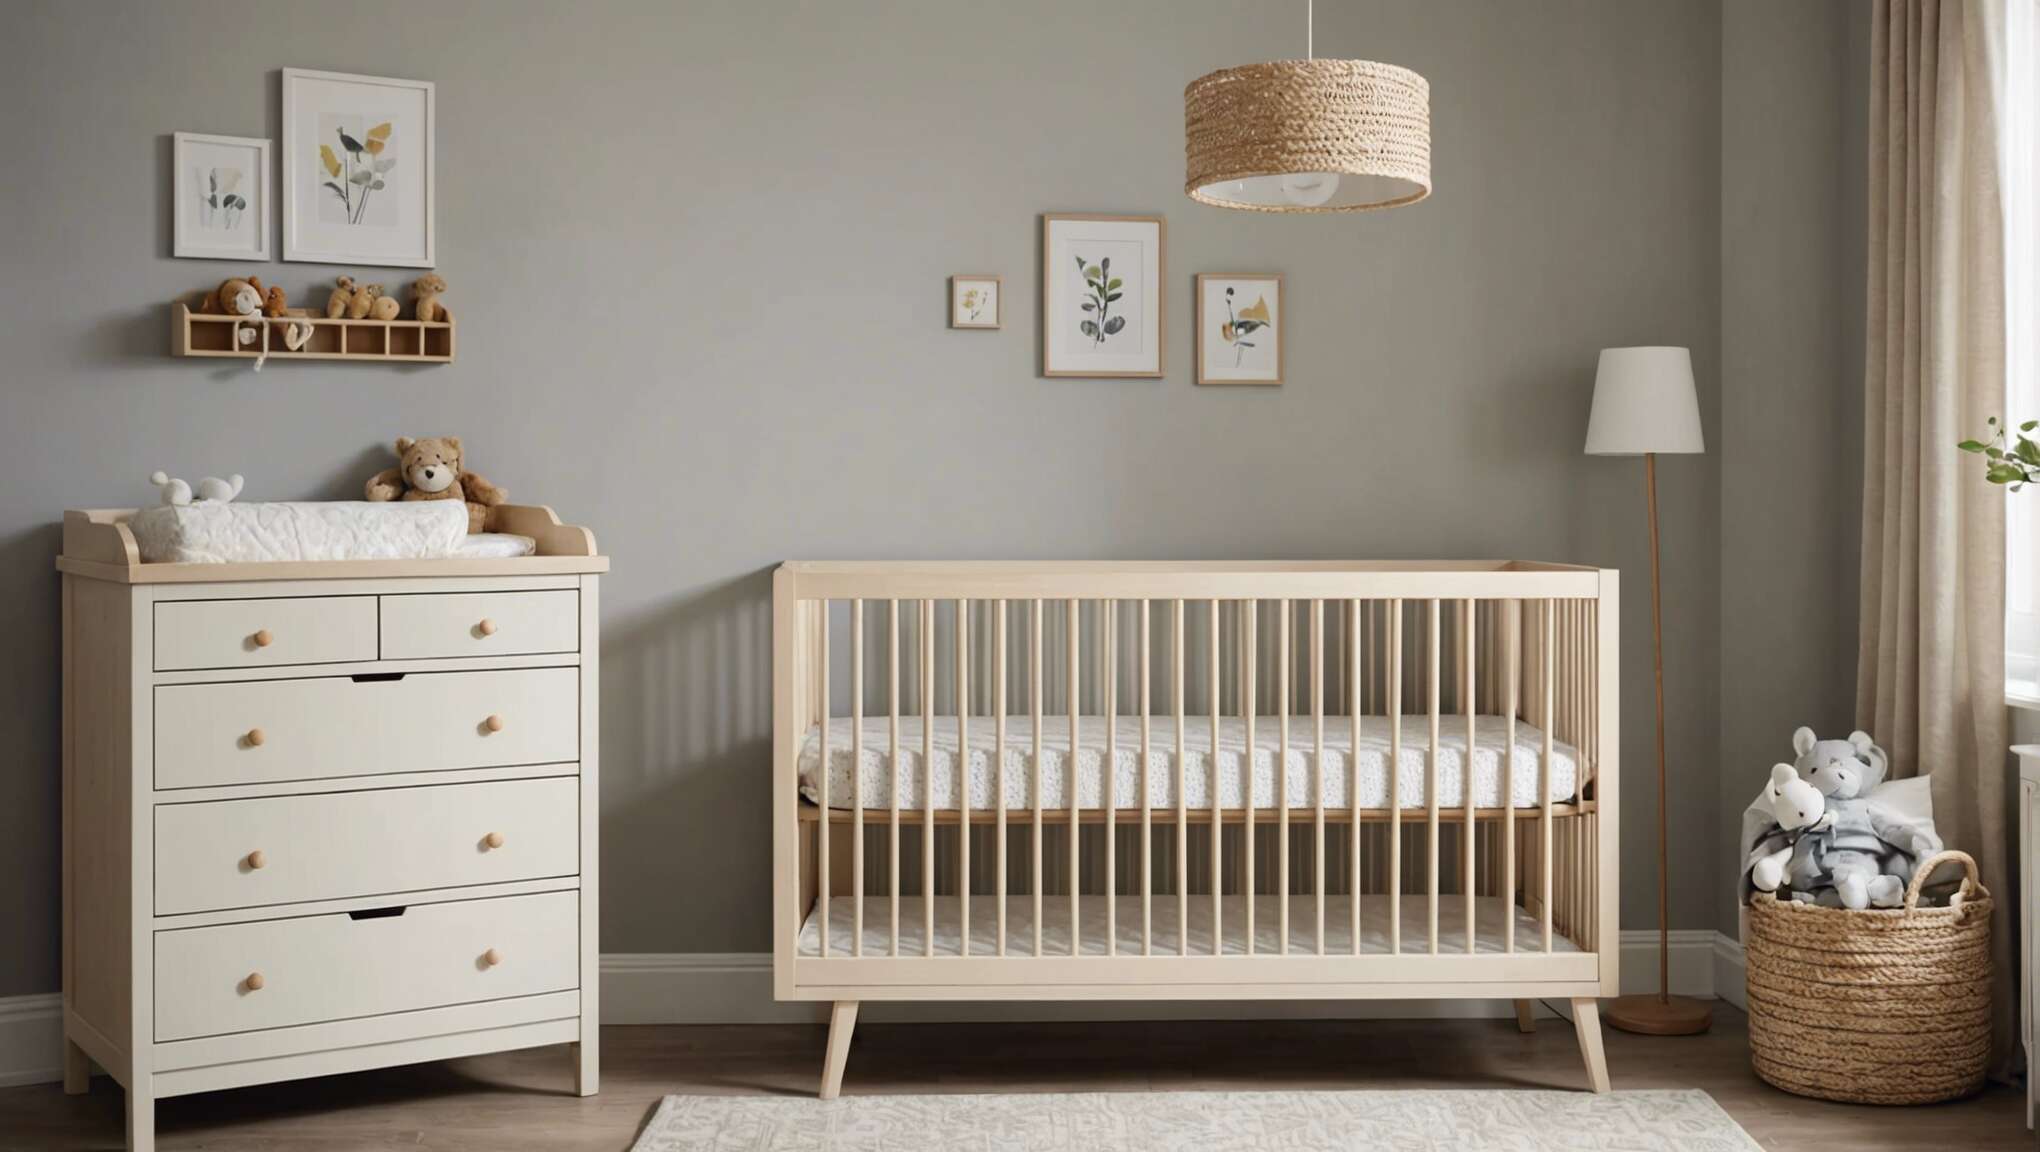 Quel berceau choisir pour allier confort et style dans la chambre de bébé ?